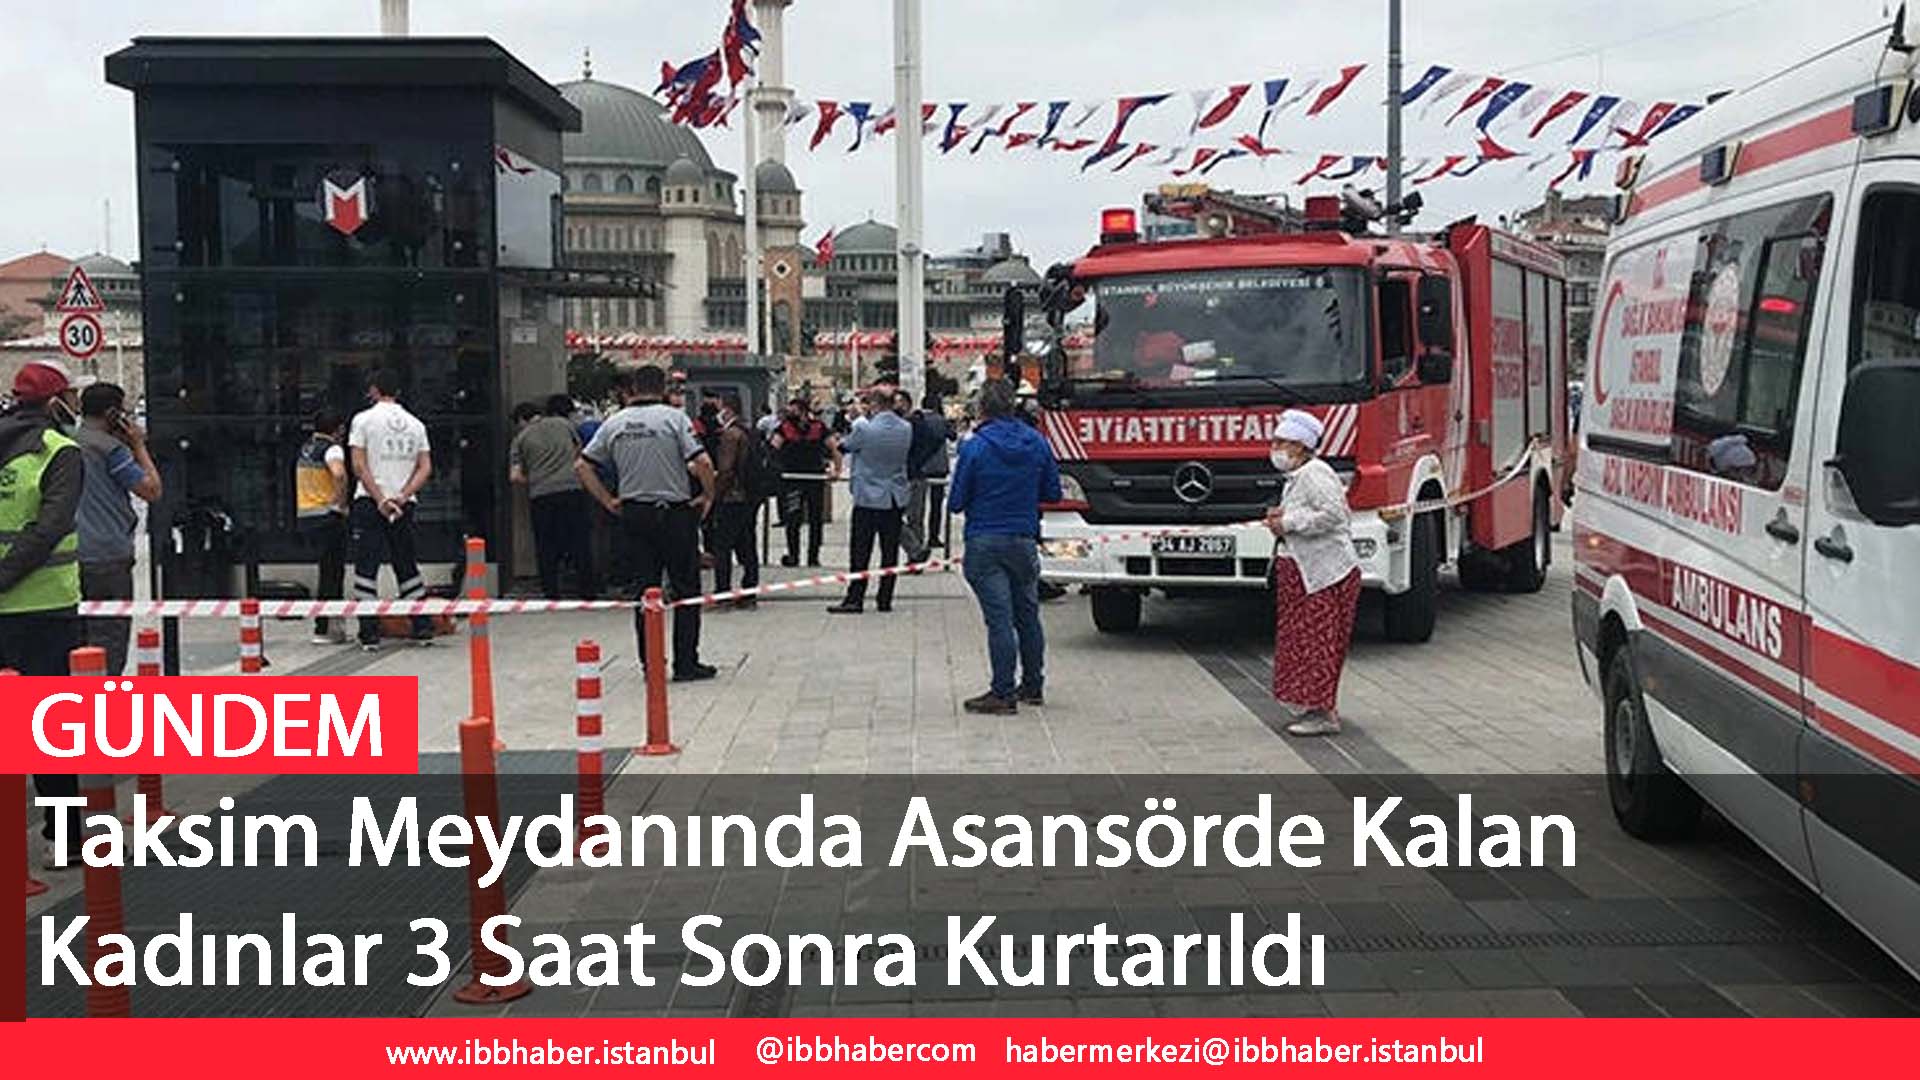 Taksim Meydanında Asansörde Kalan Kadınlar 3 Saat Sonra Kurtarıldı